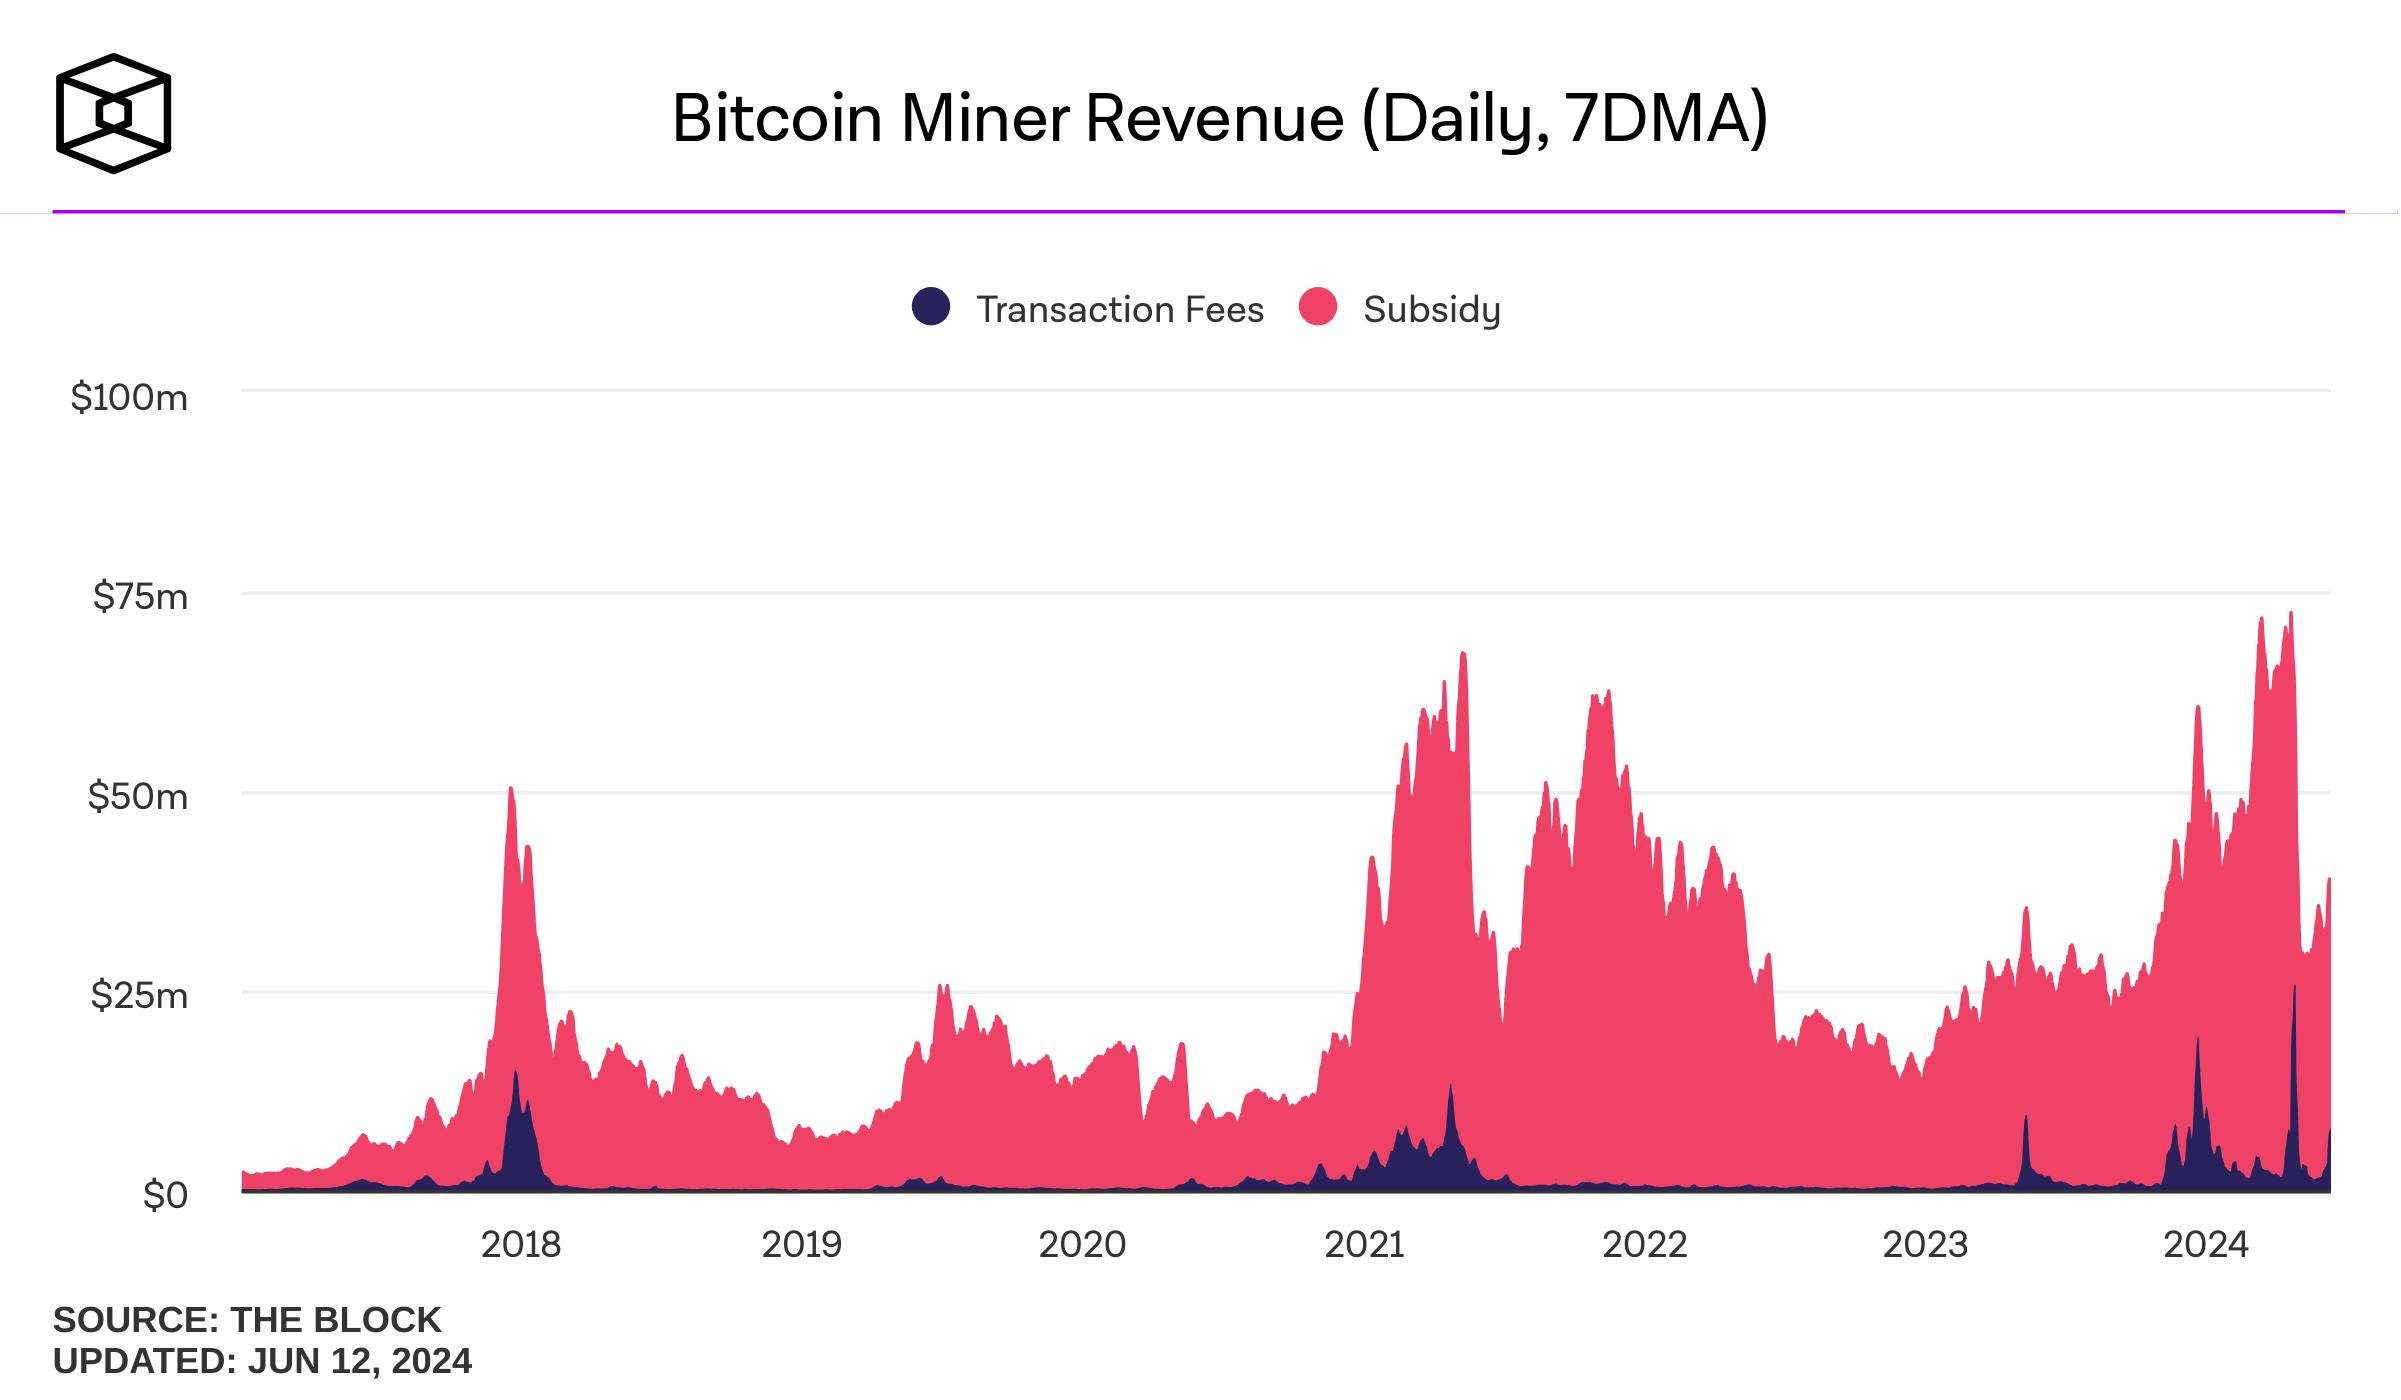 bitcoin miners